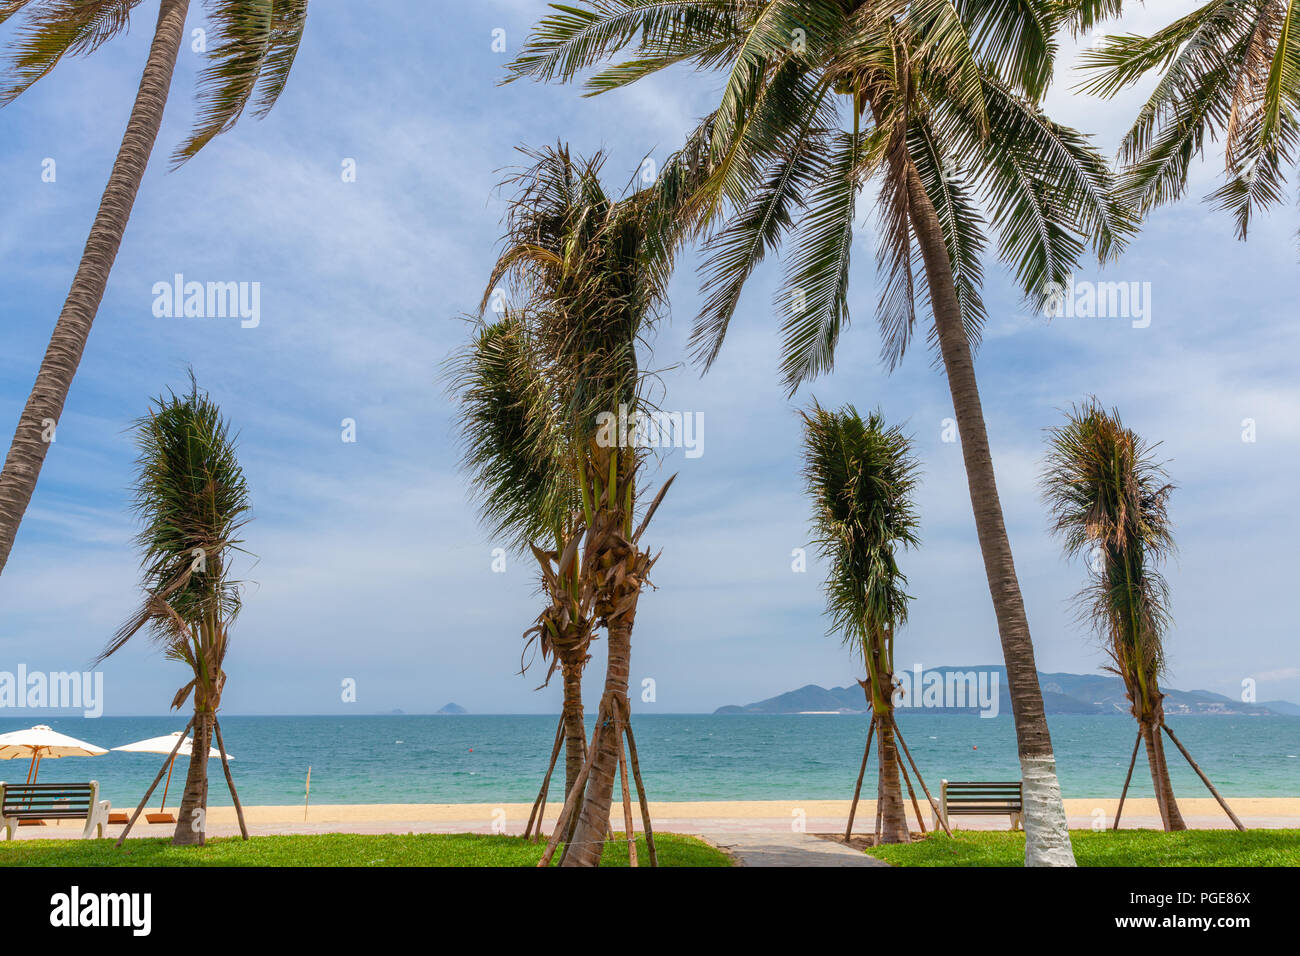 La plage de Nha Trang, un jour ensoleillé, la destination touristique populaire au Vietnam Banque D'Images